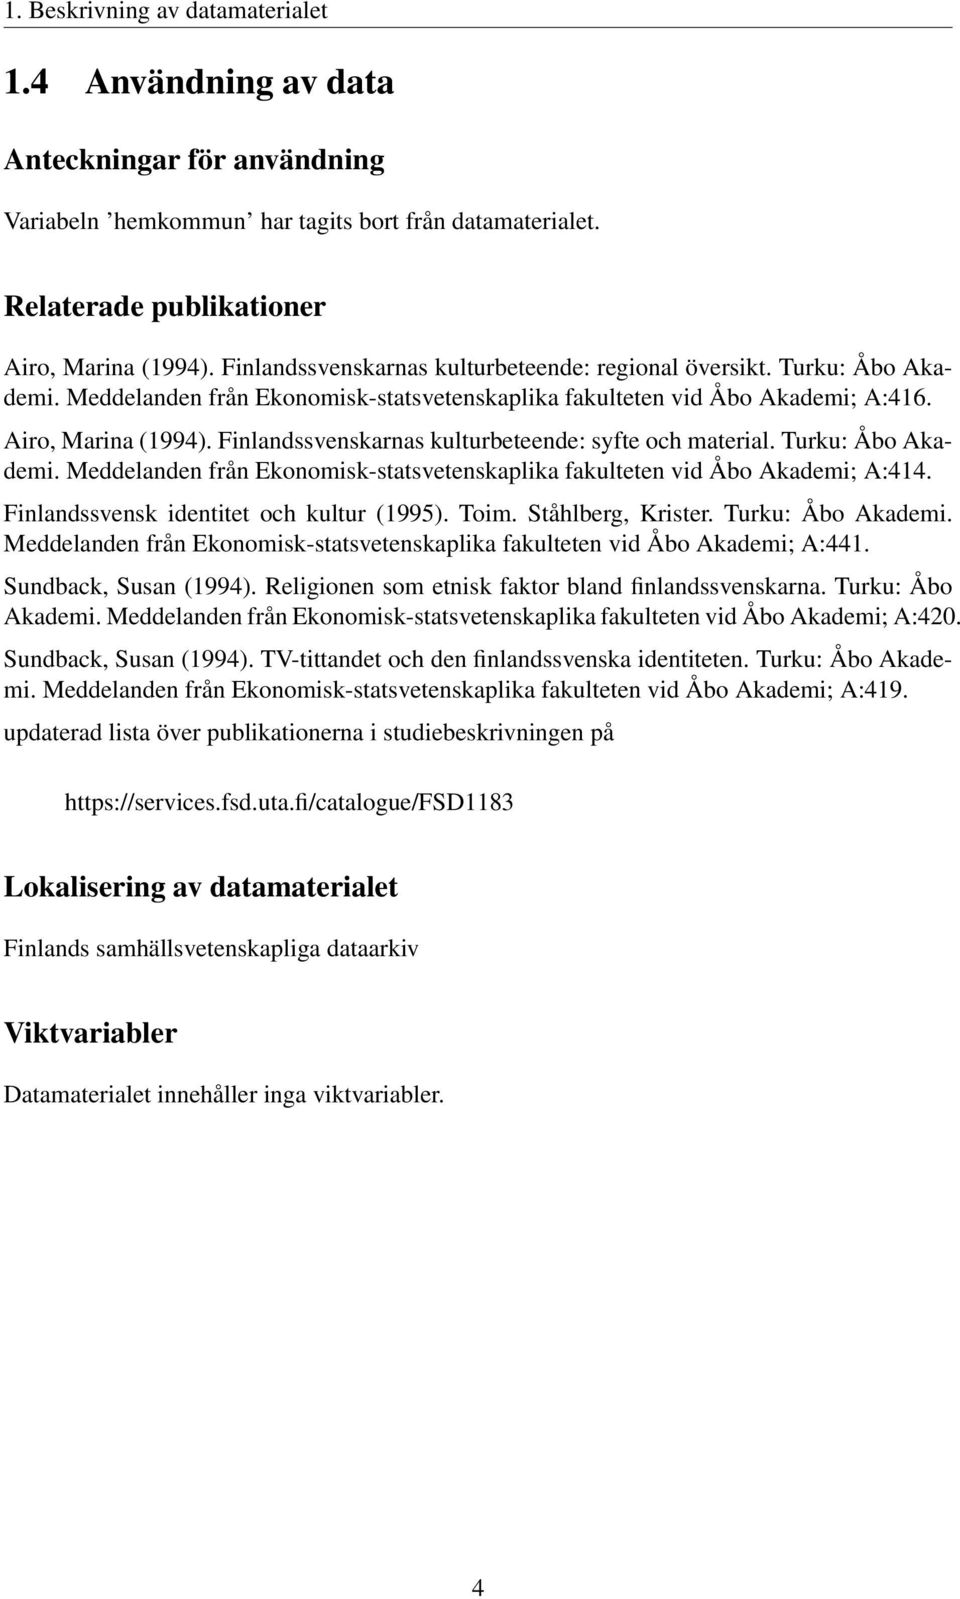 Finlandssvenskarnas kulturbeteende: syfte och material. Turku: Åbo Akademi. Meddelanden från Ekonomisk-statsvetenskaplika fakulteten vid Åbo Akademi; A:414. Finlandssvensk identitet och kultur (1995).